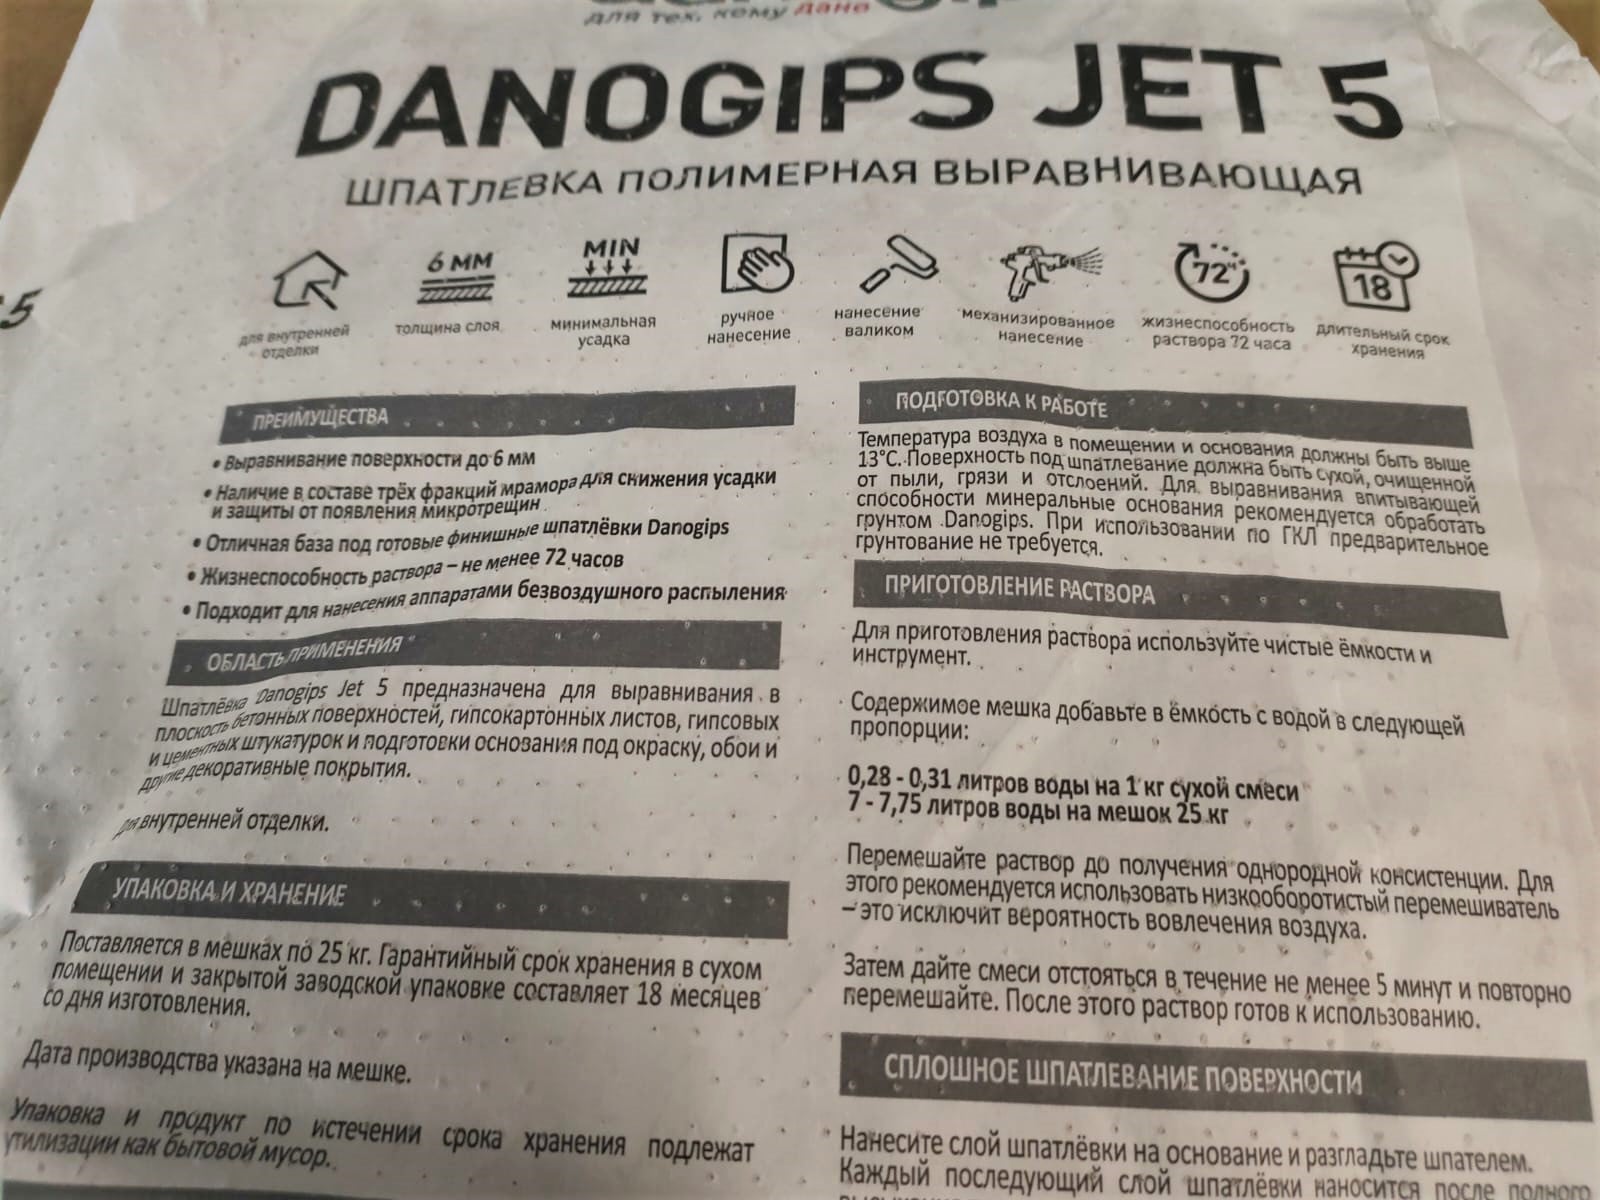 Шпатлевка DANO JET5 выравнивающая полимерная Danogips (Даногипс) 25 кг